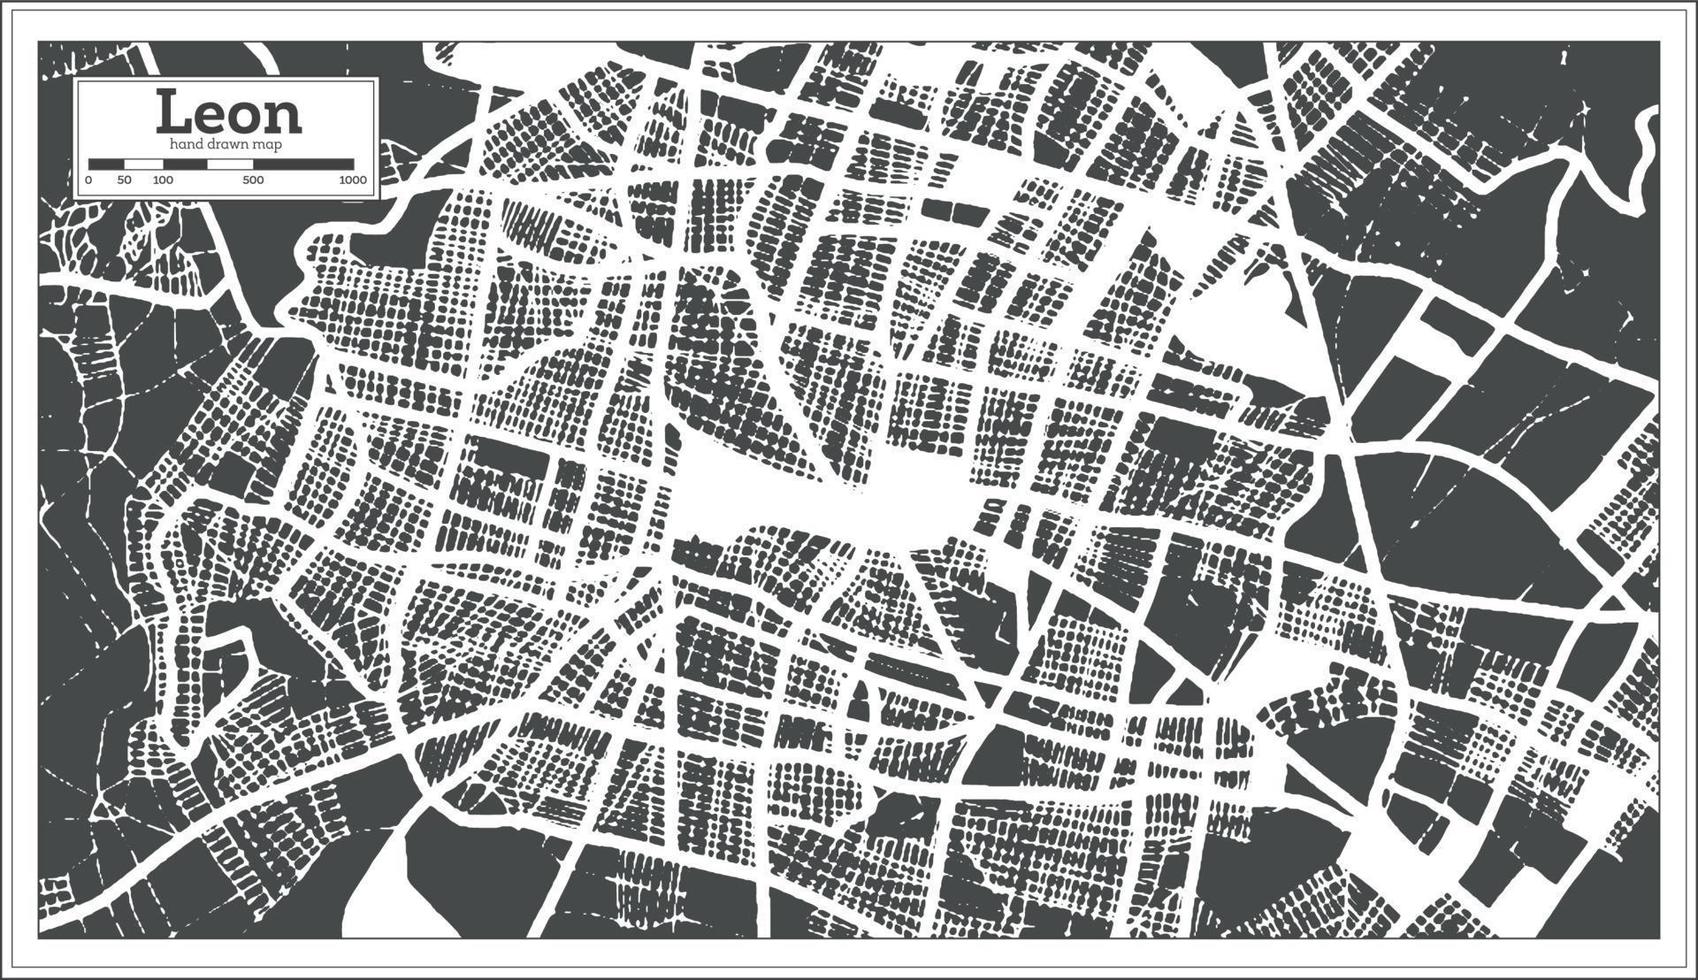 plan de la ville de leon mexico dans un style rétro. carte muette. vecteur